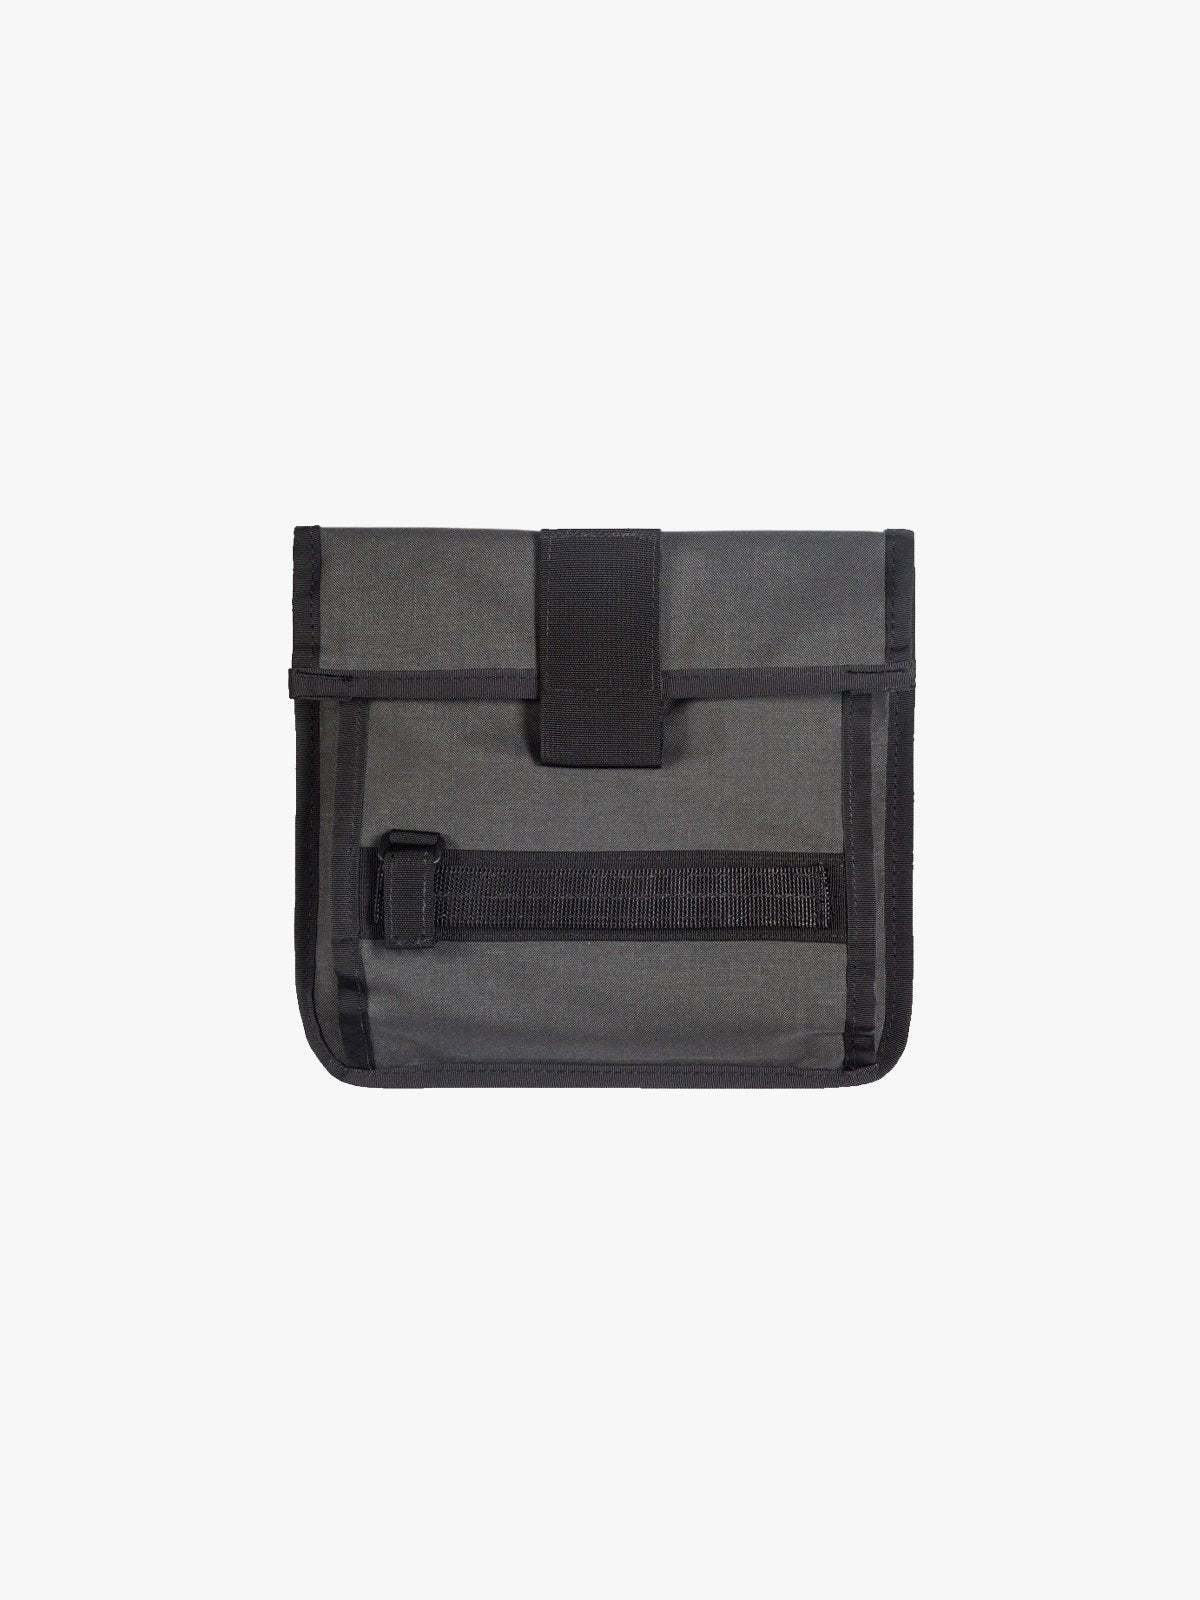 Arkiv Tool Pocket by Mission Workshop - Weersbestendige tassen & technische kleding - San Francisco & Los Angeles - Gebouwd om te weerstaan - Voor altijd gegarandeerd